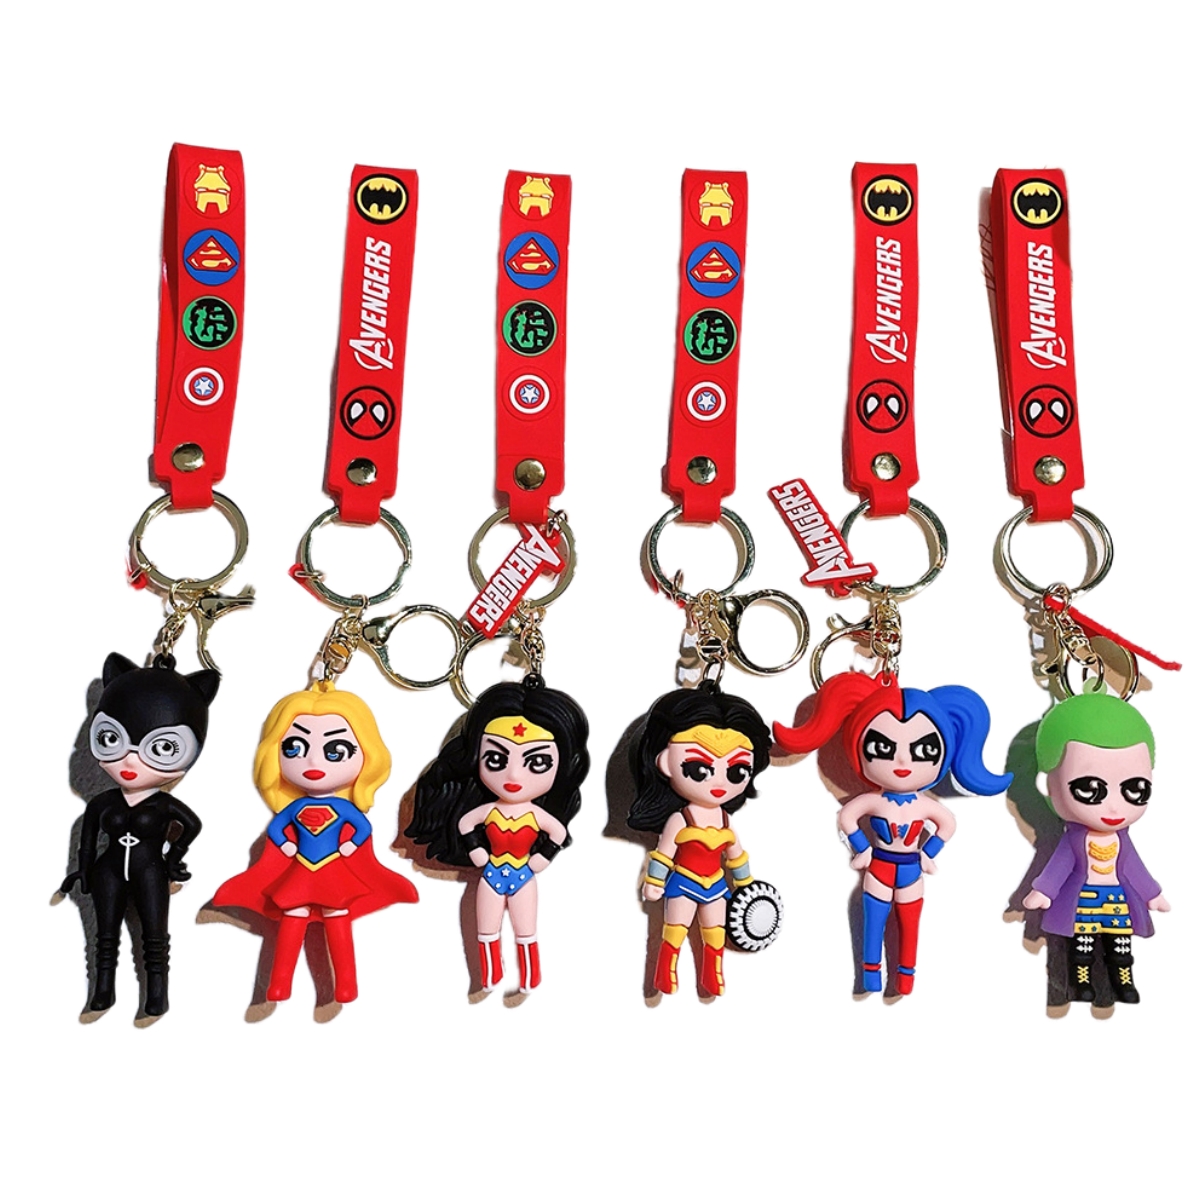 Superhelden-Schlüsselanhänger, hässliches Mädchen, Joker-Schlüsselanhänger, Selbstmordkommando, Puppenanhänger im Großhandel